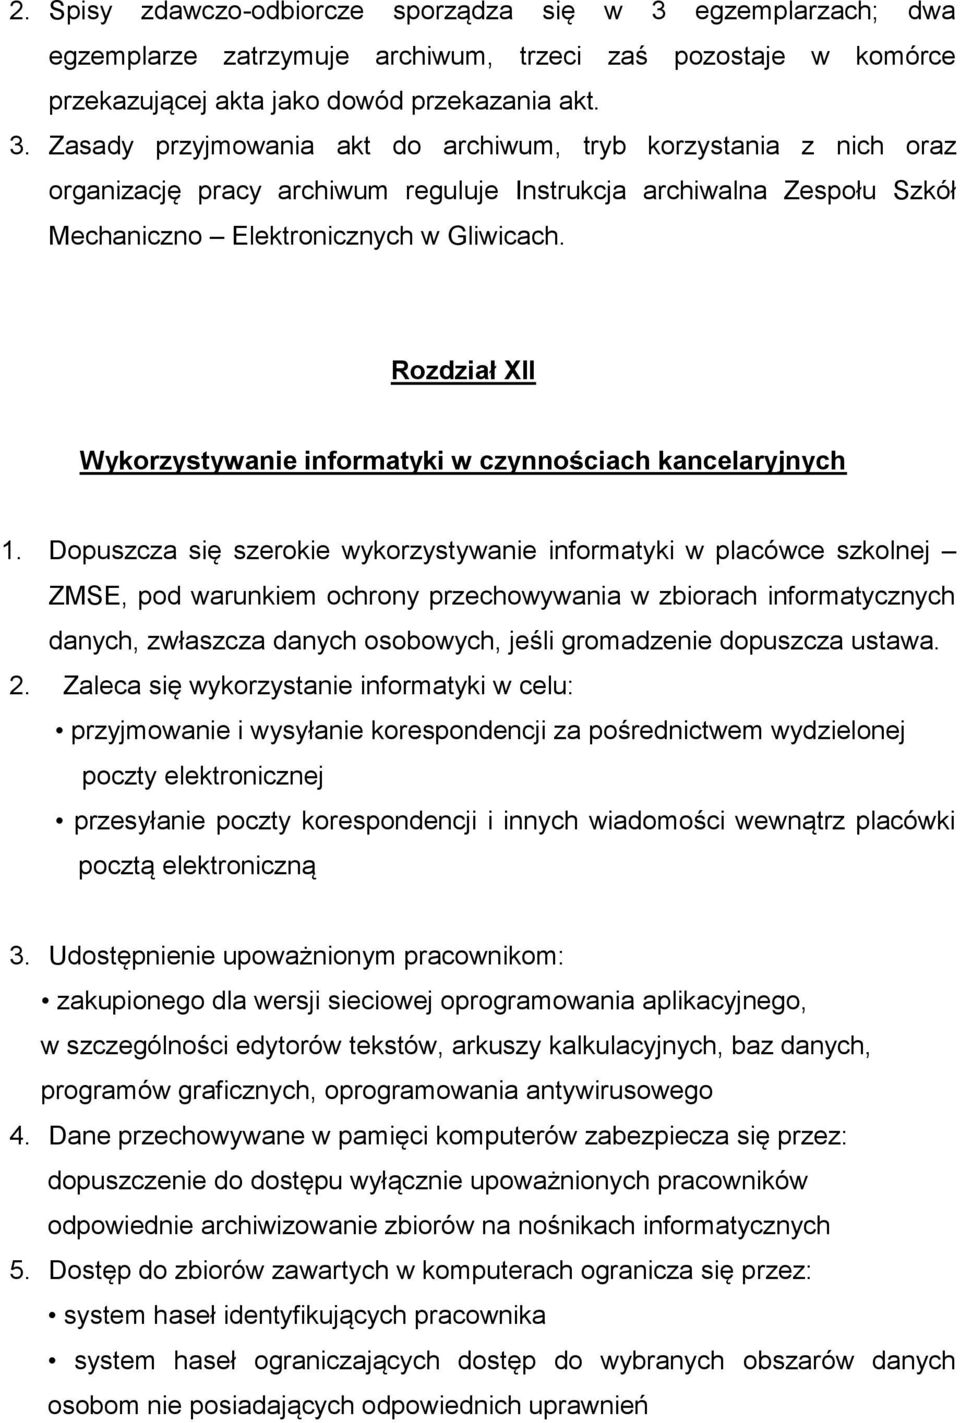 Zasady przyjmowania akt do archiwum, tryb korzystania z nich oraz organizację pracy archiwum reguluje Instrukcja archiwalna Zespołu Szkół Mechaniczno Elektronicznych w Gliwicach.